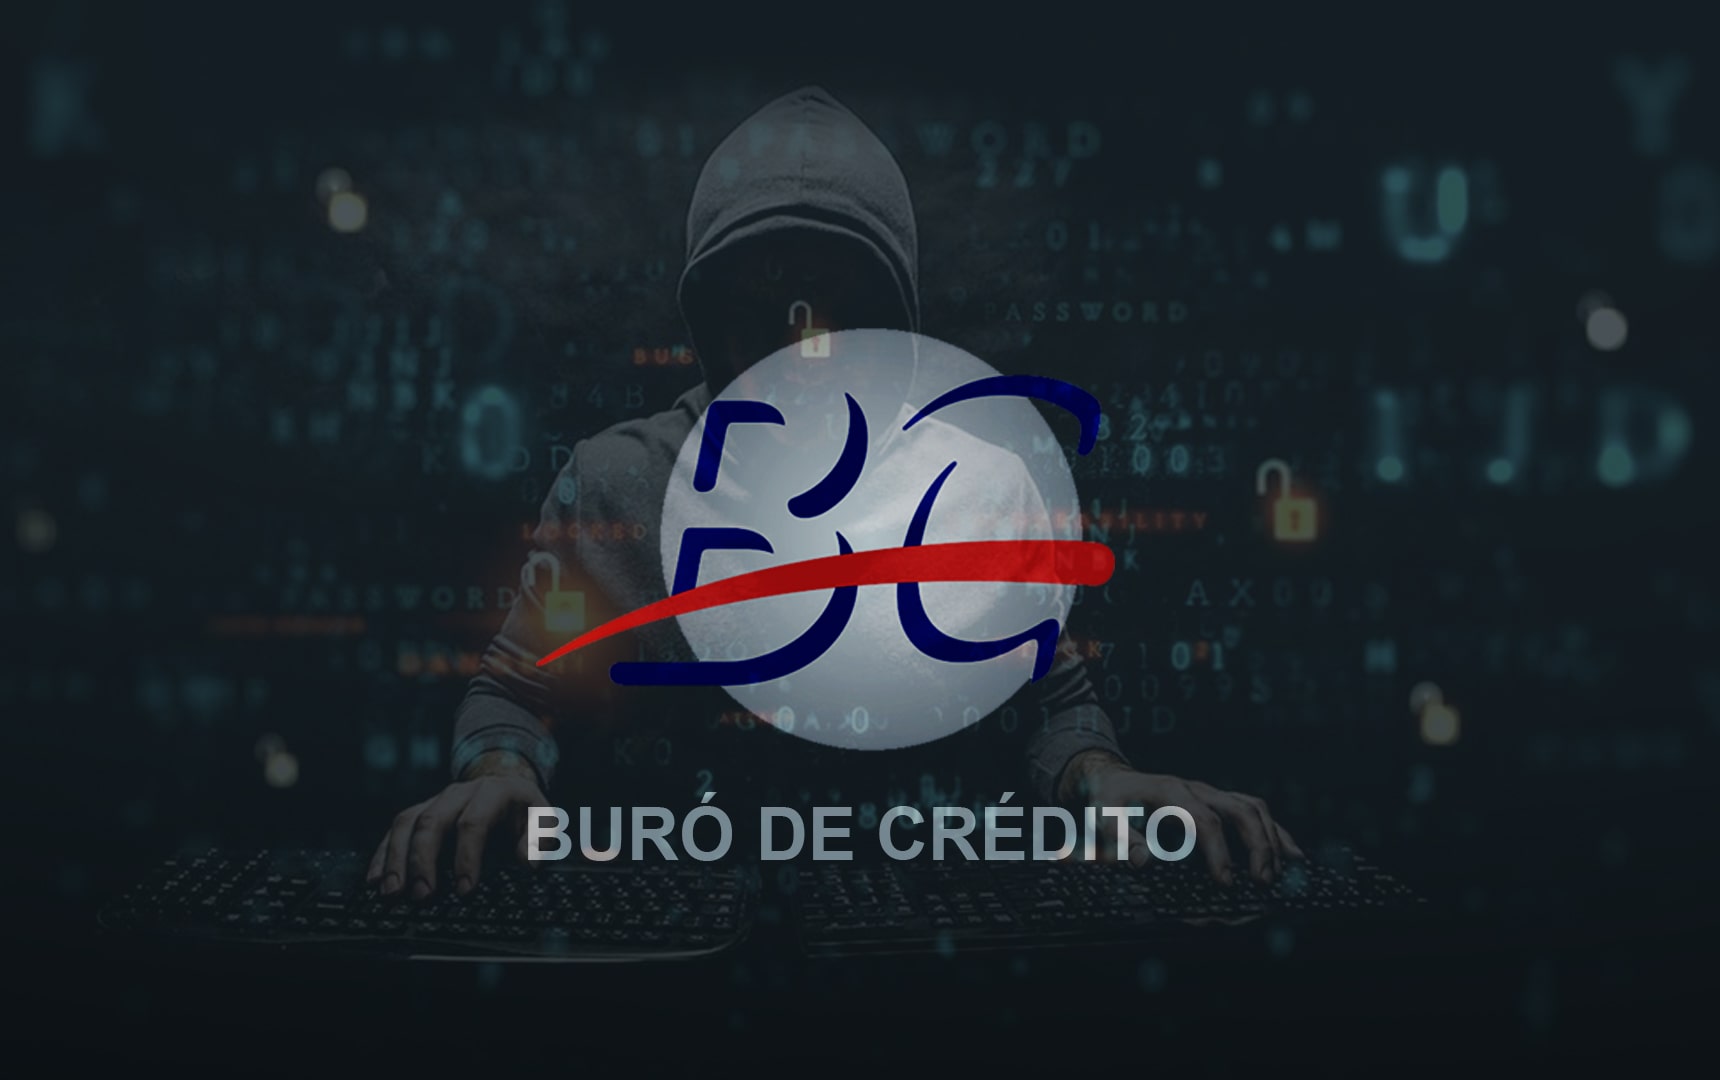 La CNBV confirma hackeo al Buró de Crédito